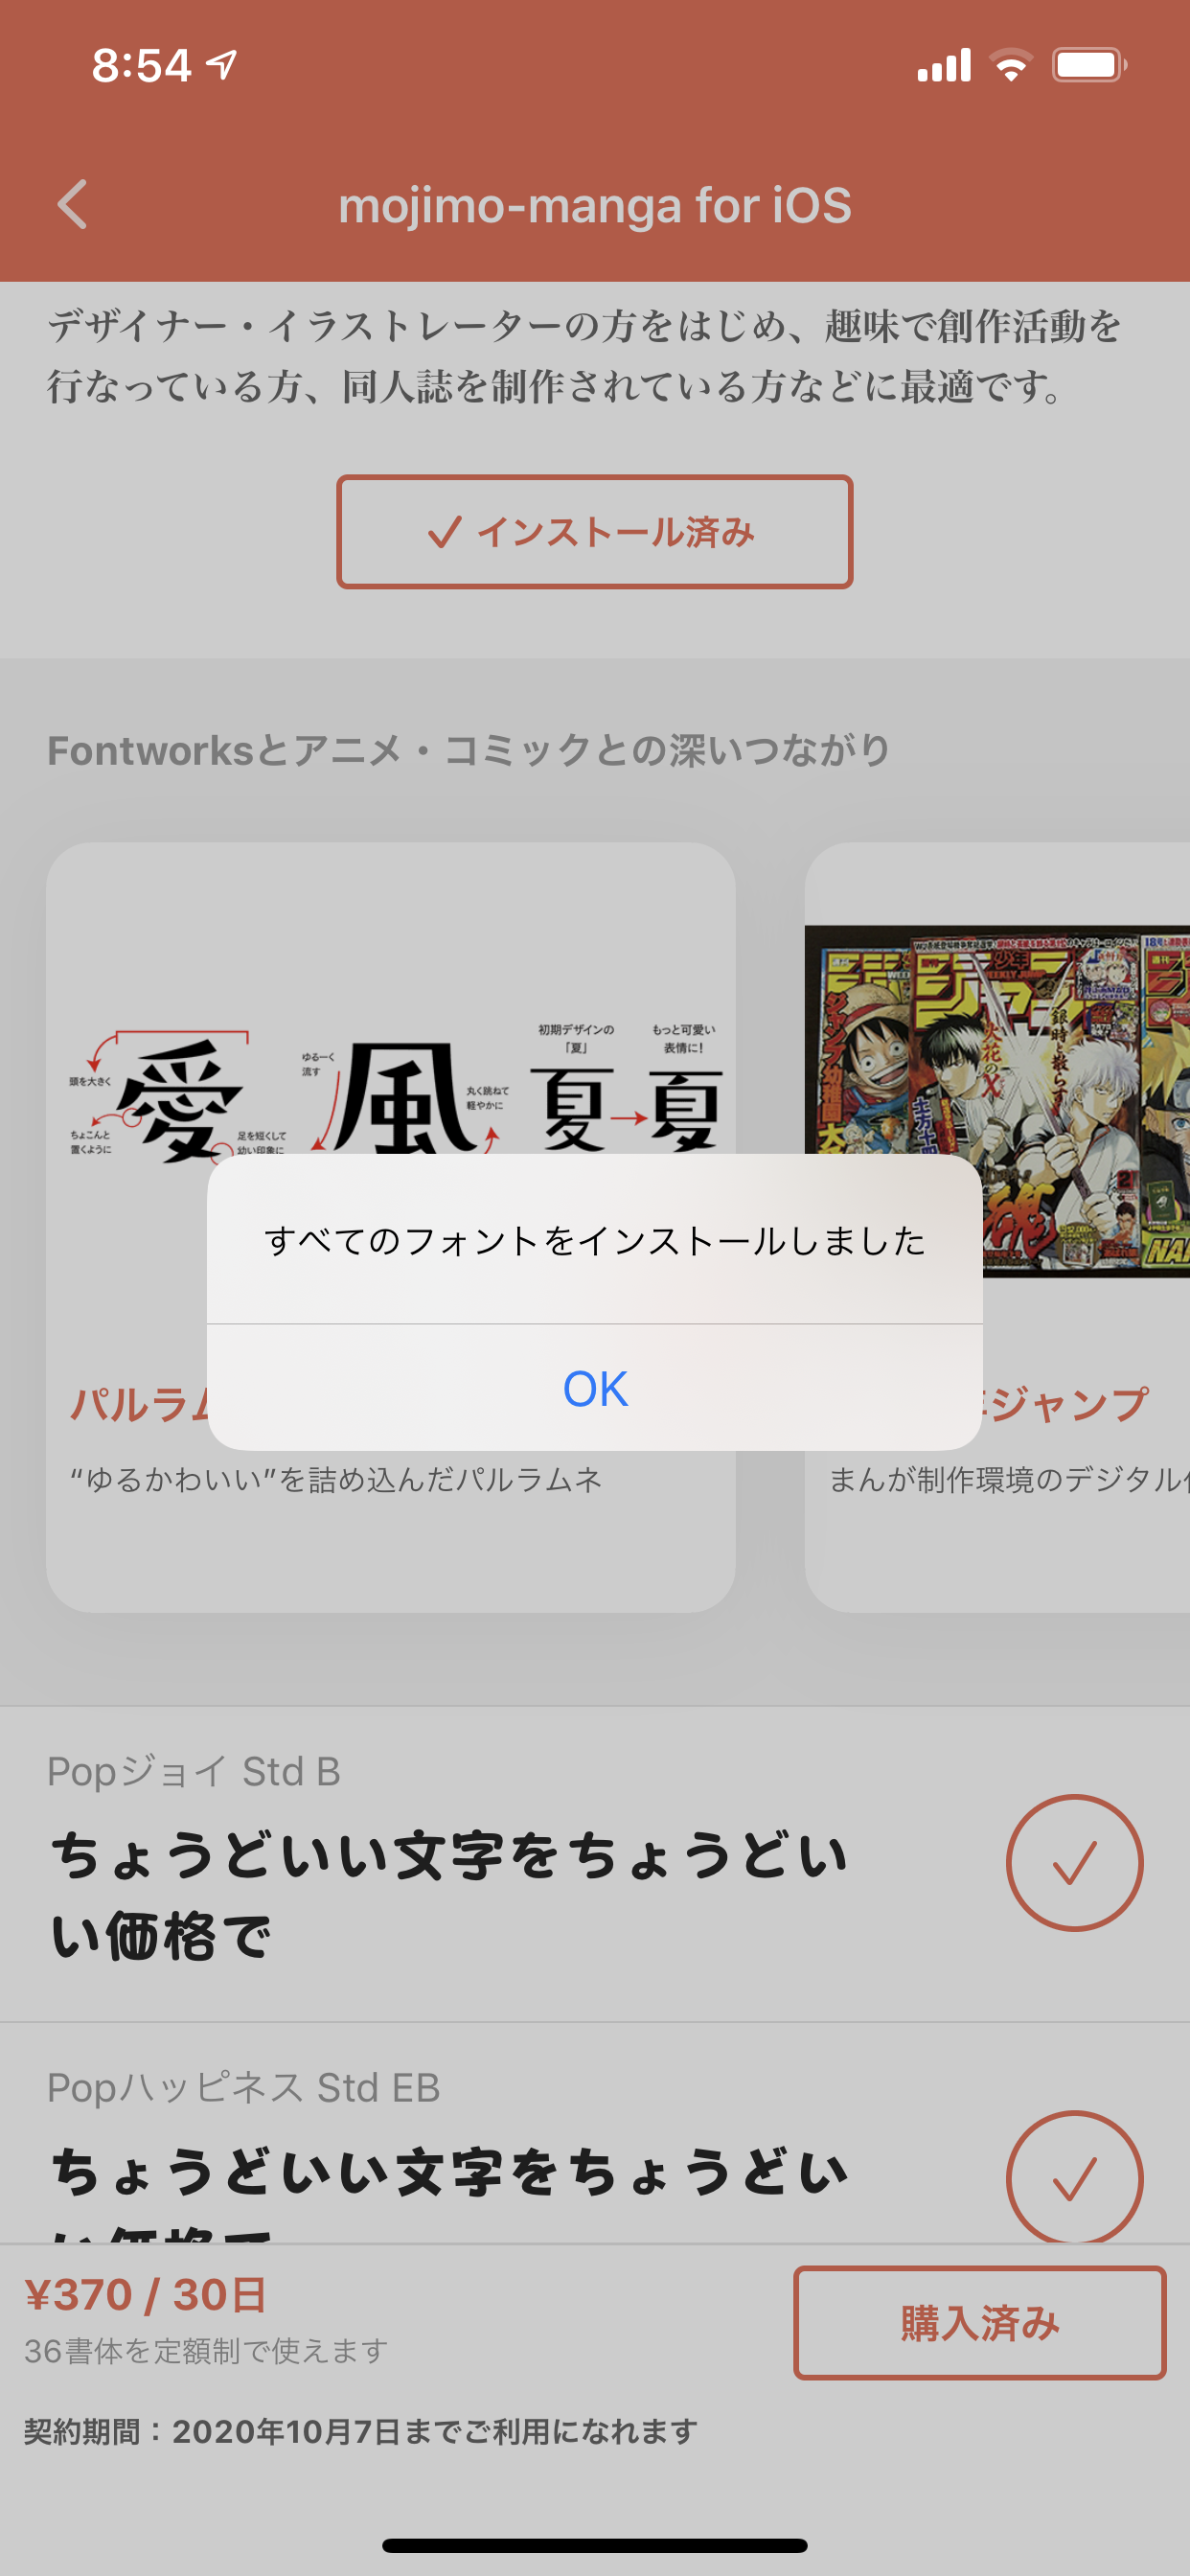 モバイル版mojimoのフォントをiphoneの写真加工アプリで使ってみよう Fontworks